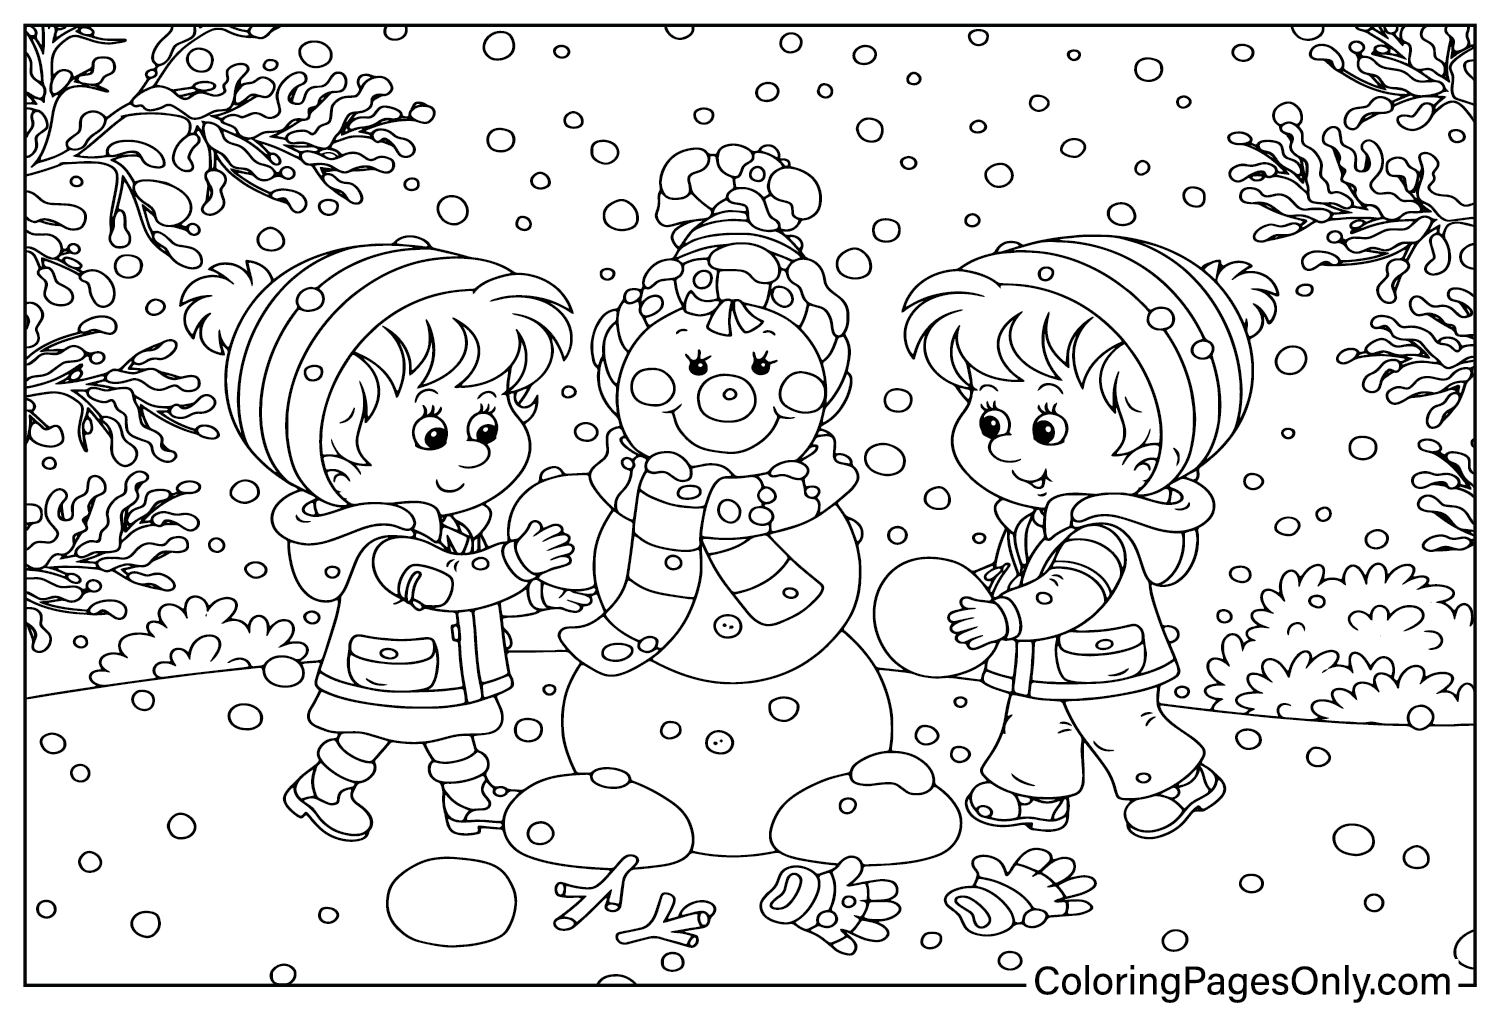 Desenho de boneco de neve para colorir de inverno